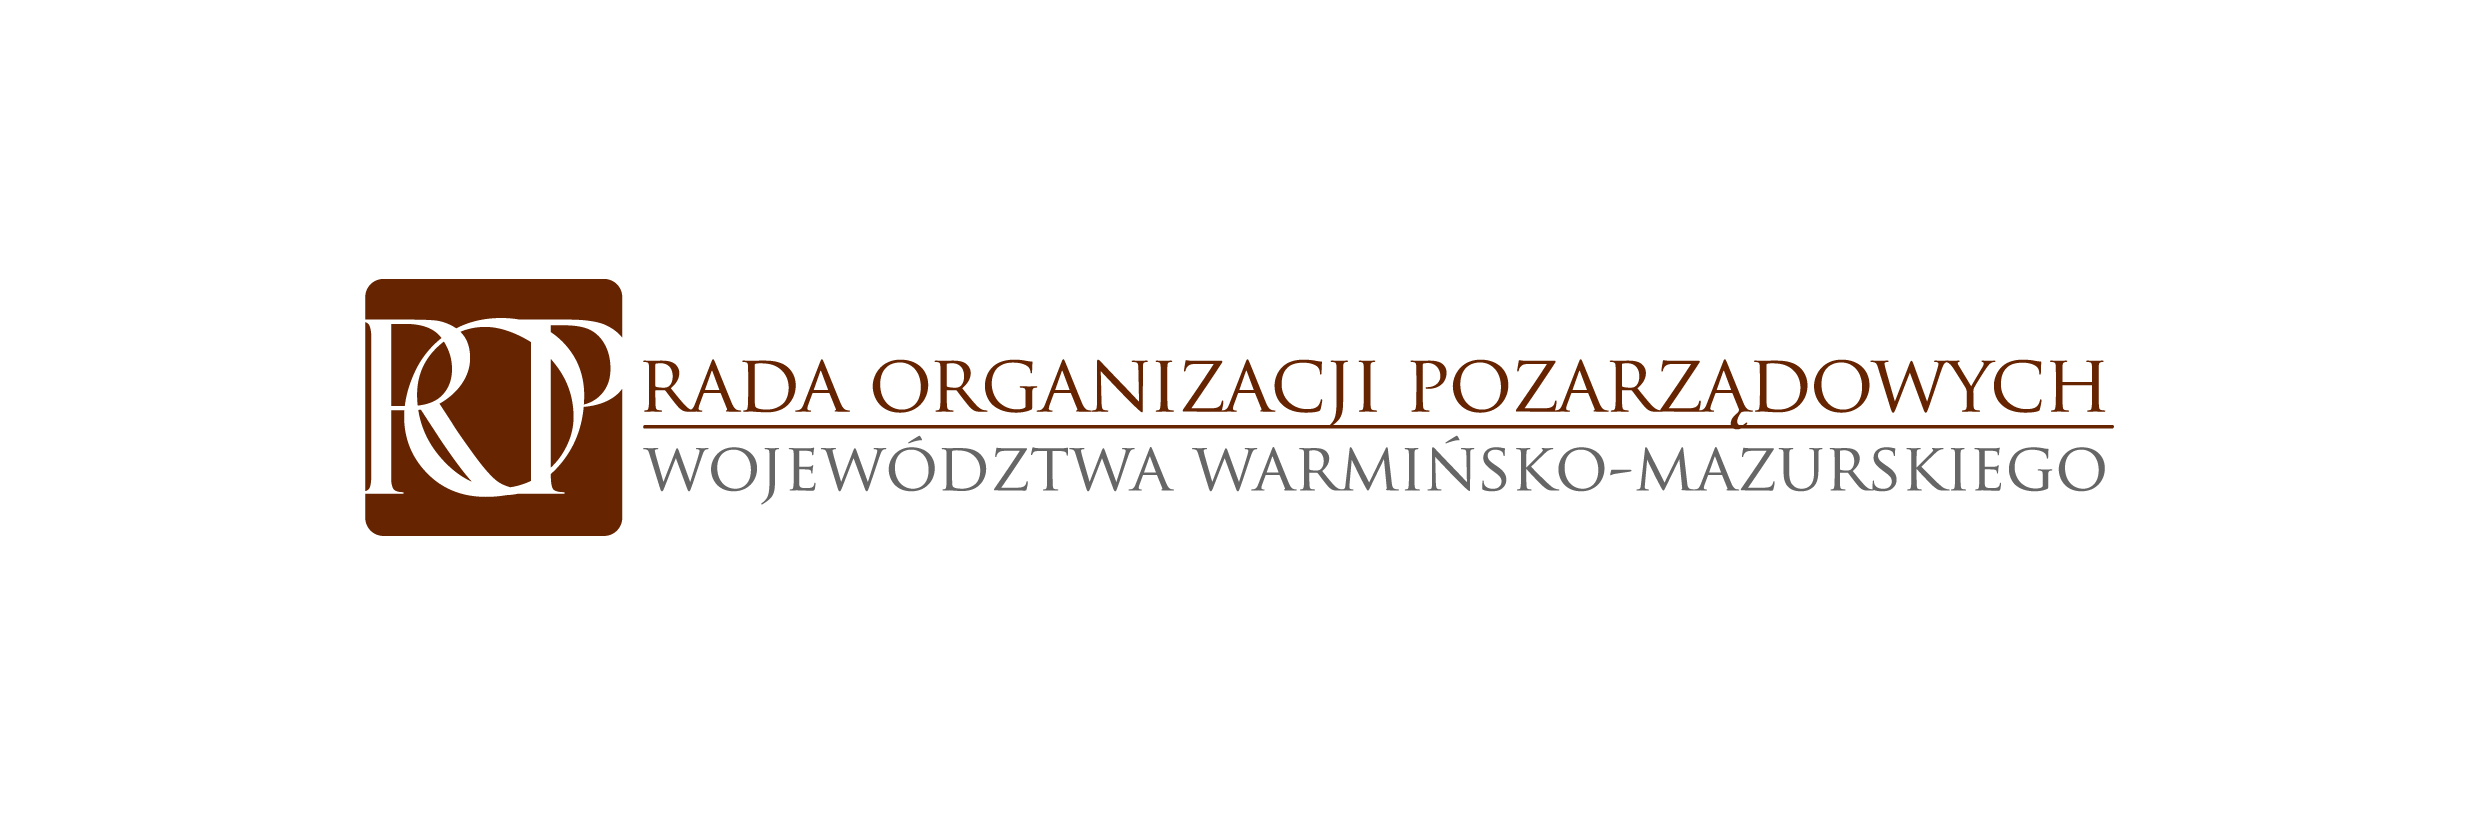 III Forum Rad Działalności Pożytyku Publicznego w Olsztynie 